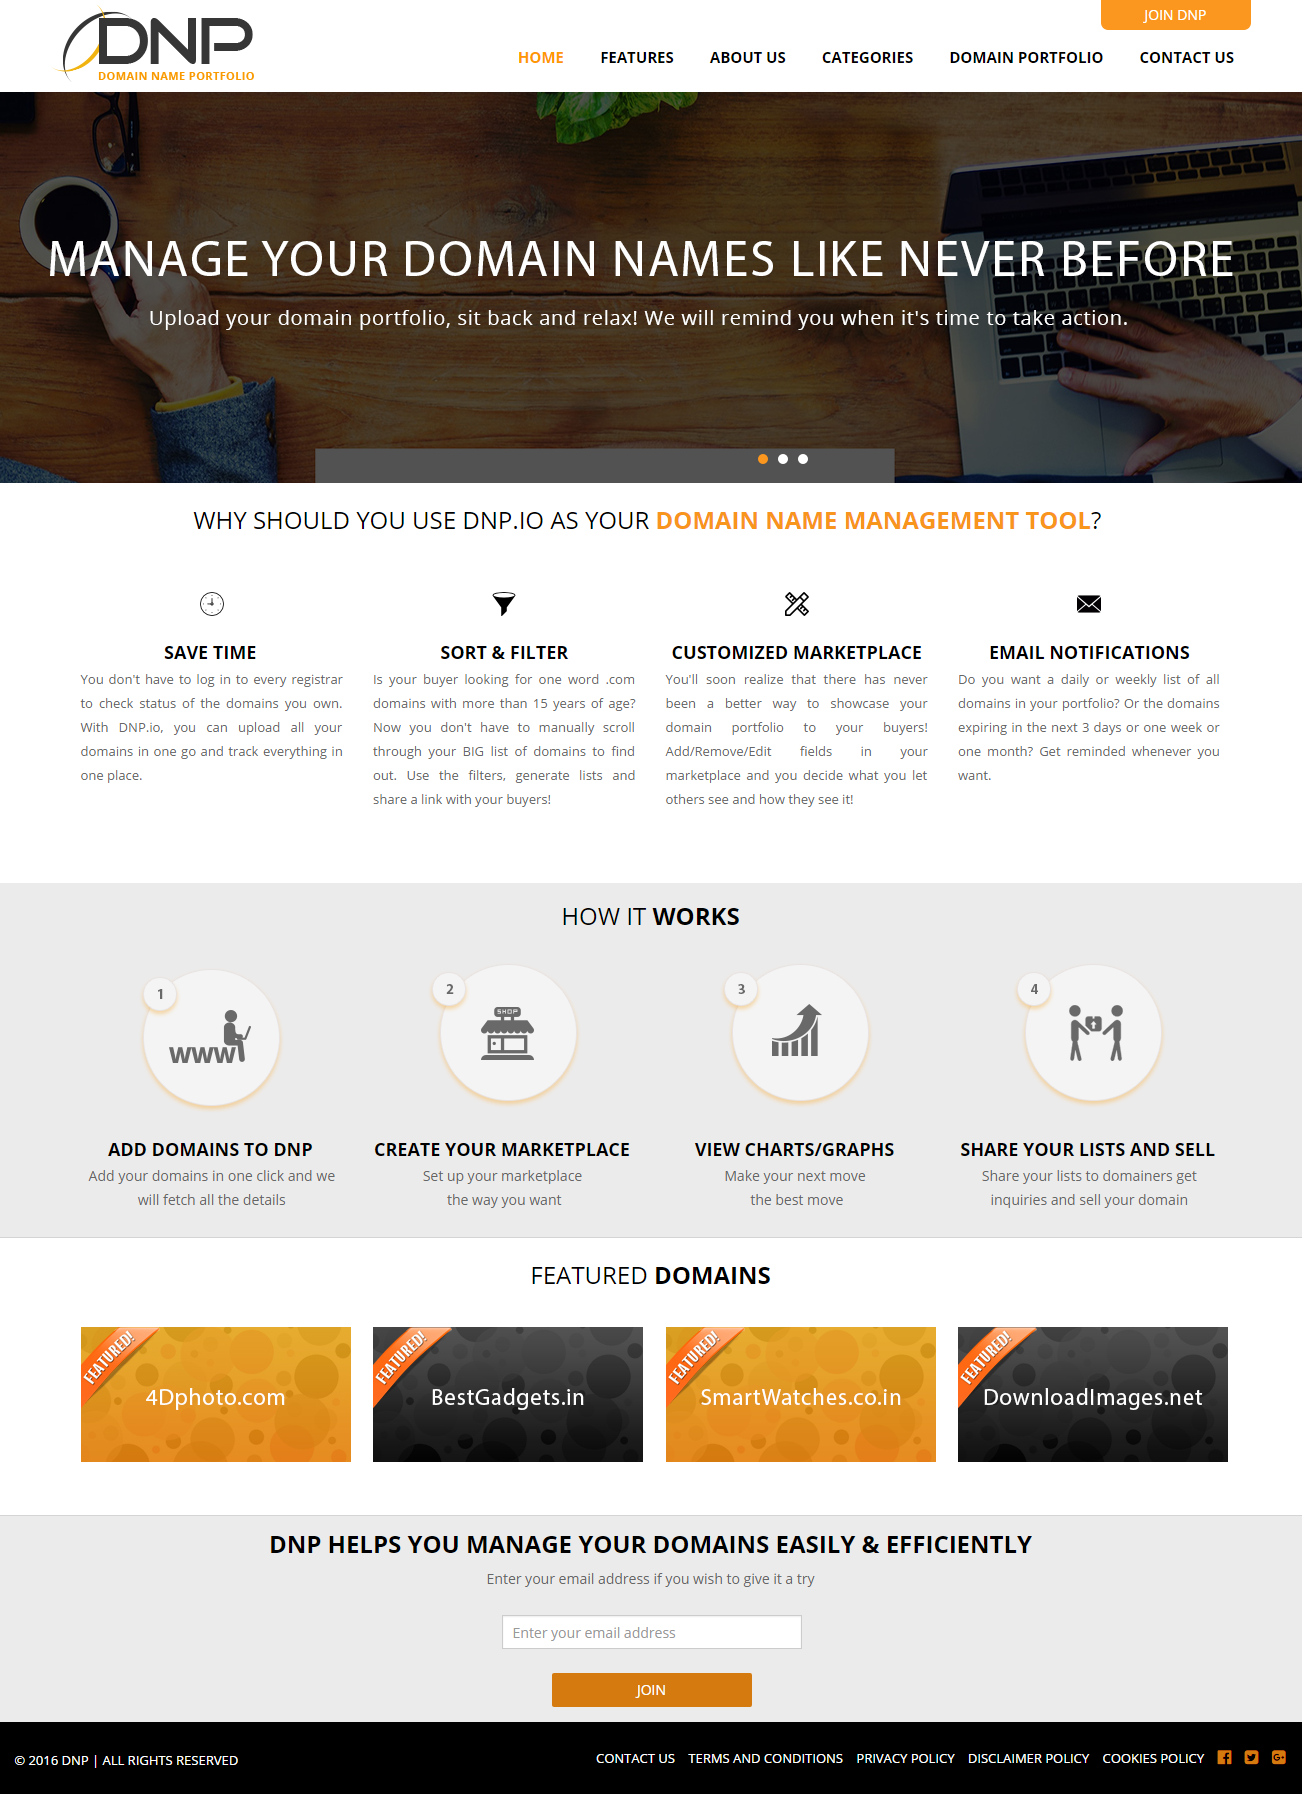 Dynamic Website for Domain Name Portfolio